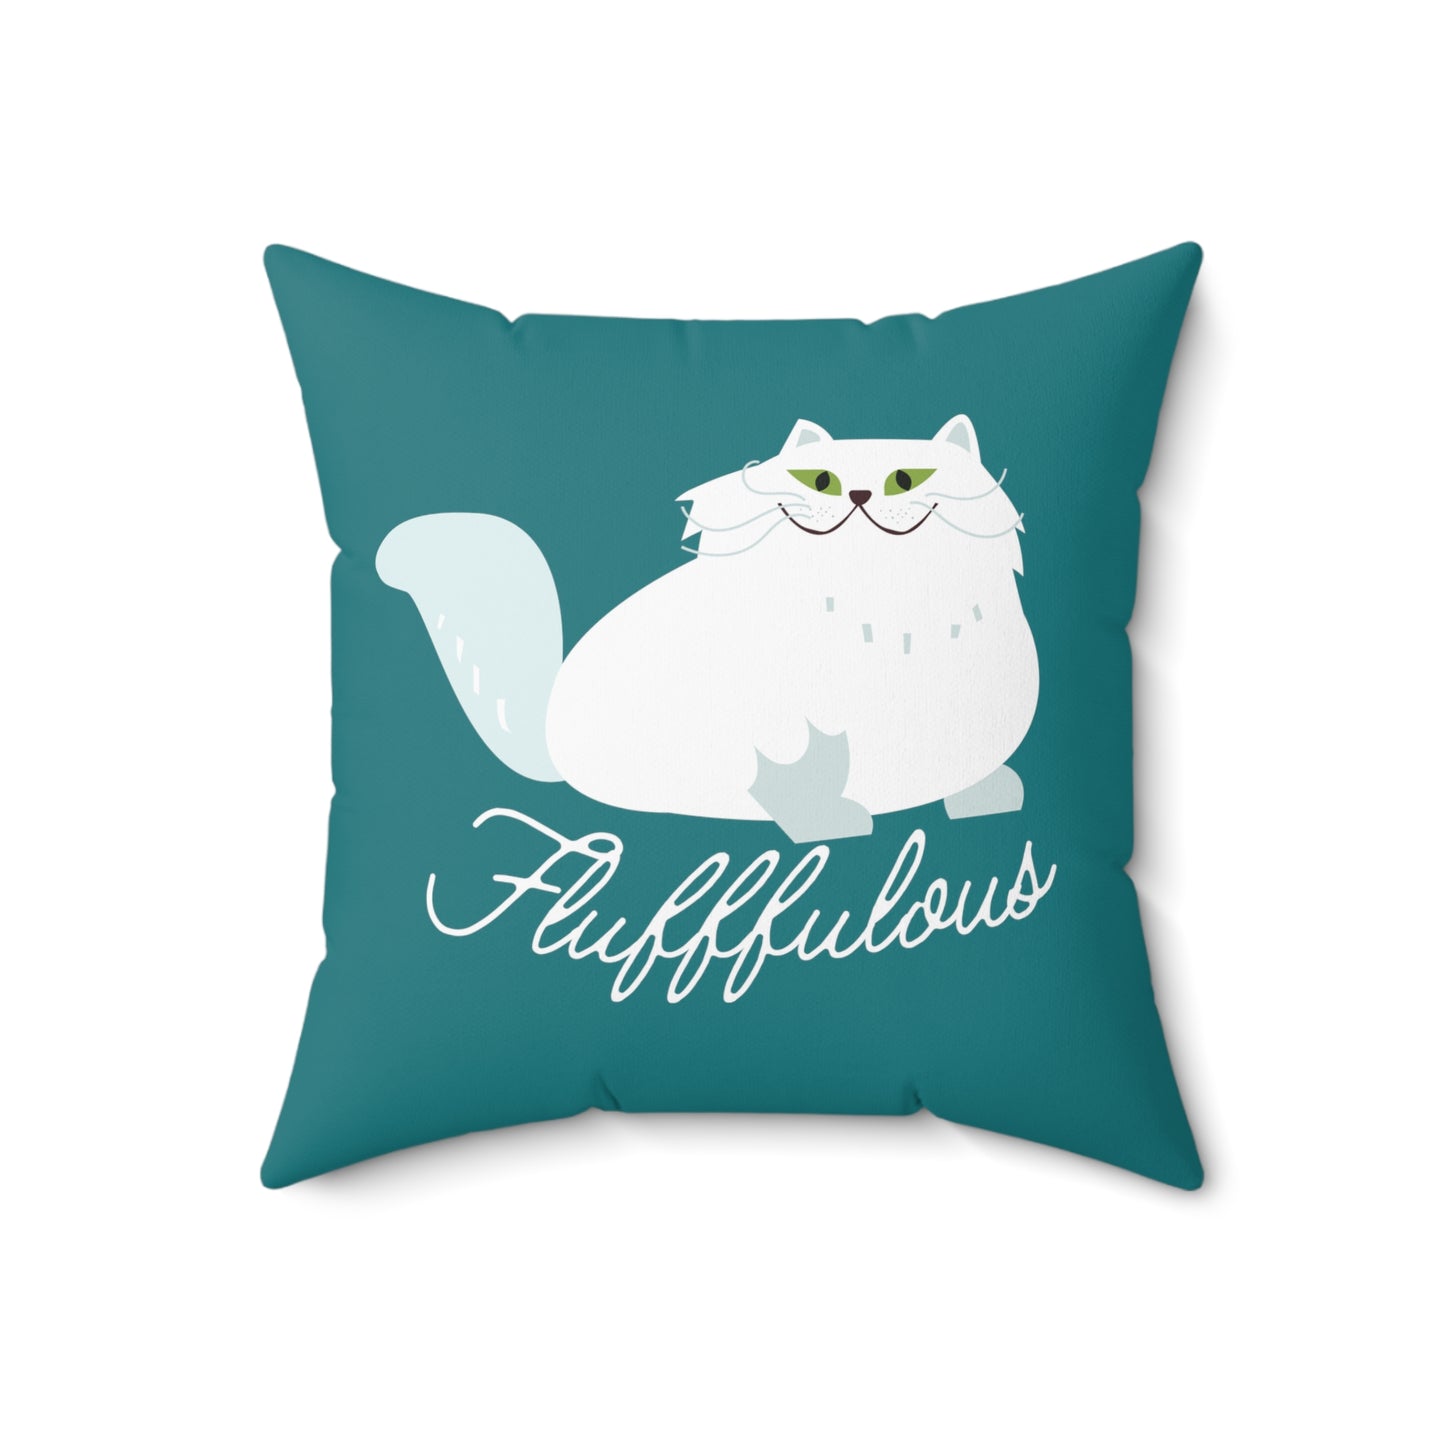 Fabulous Persian cat Pillow